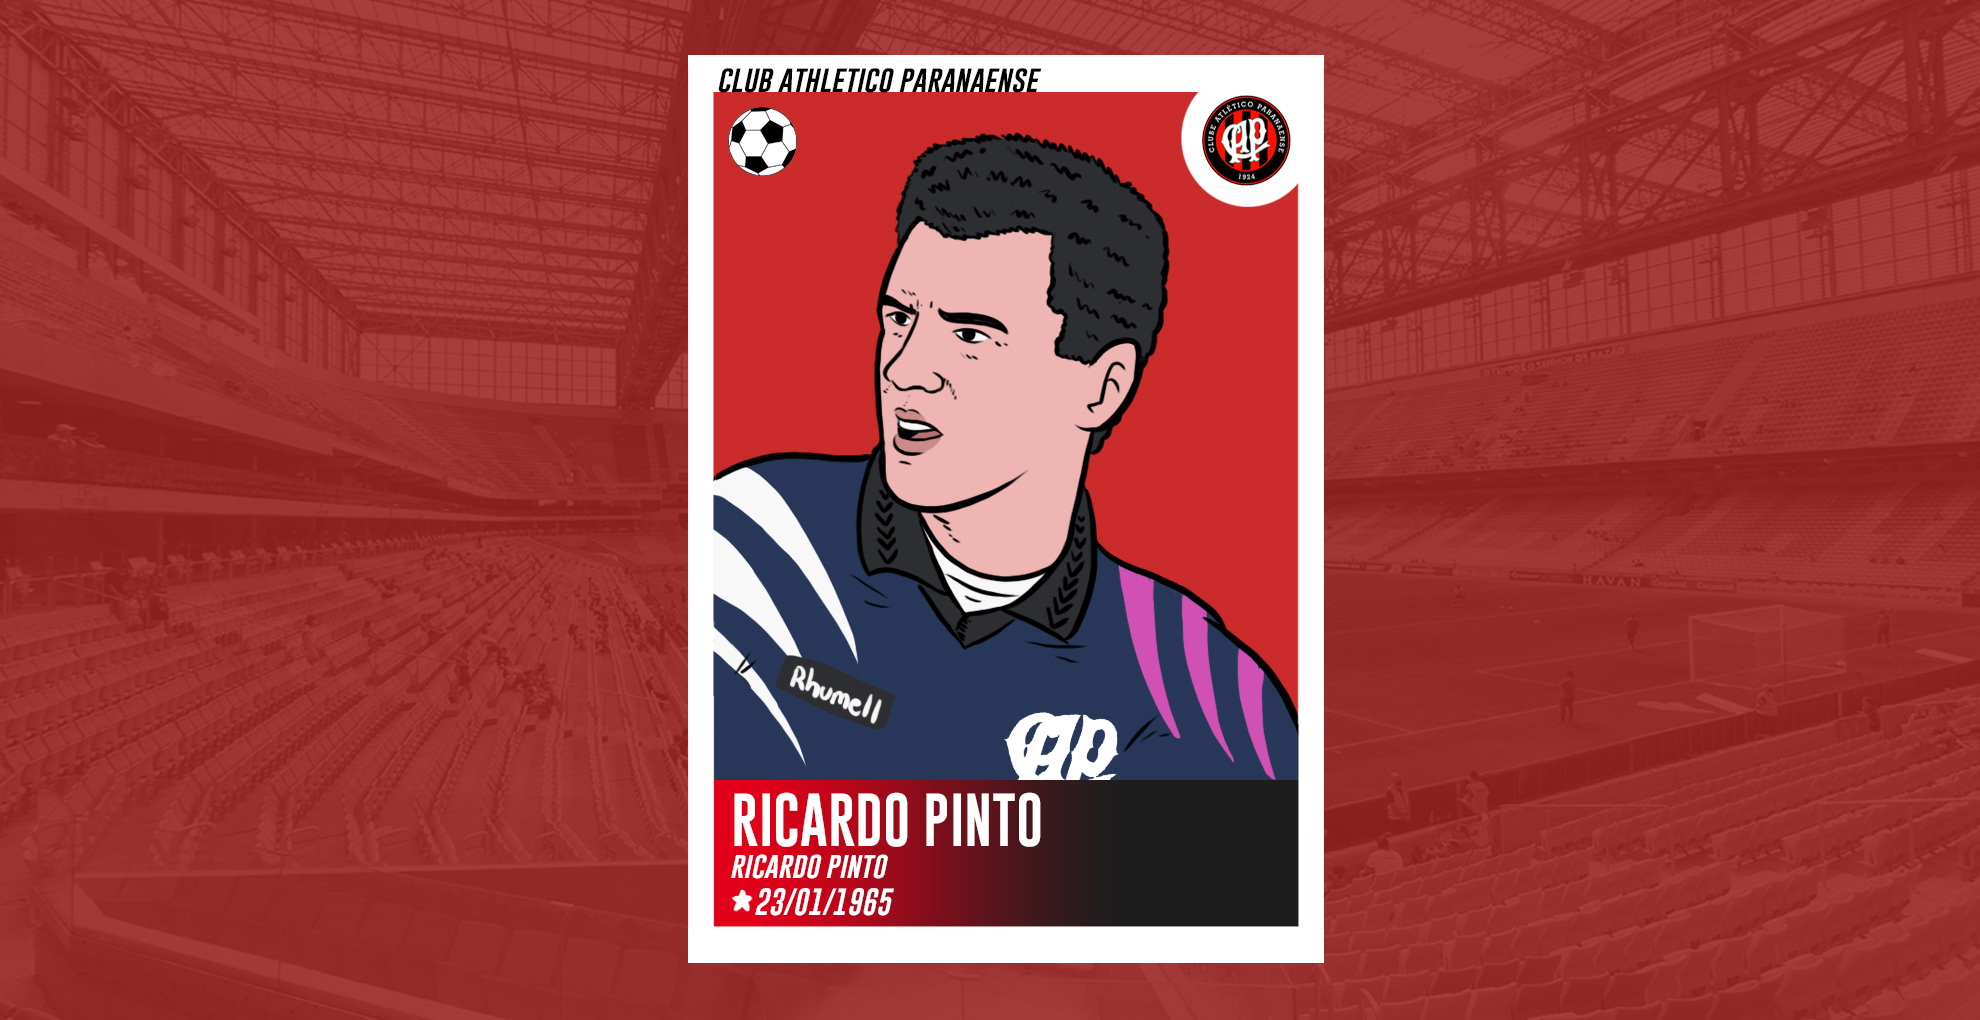  Ricardo Pinto, o mártir  